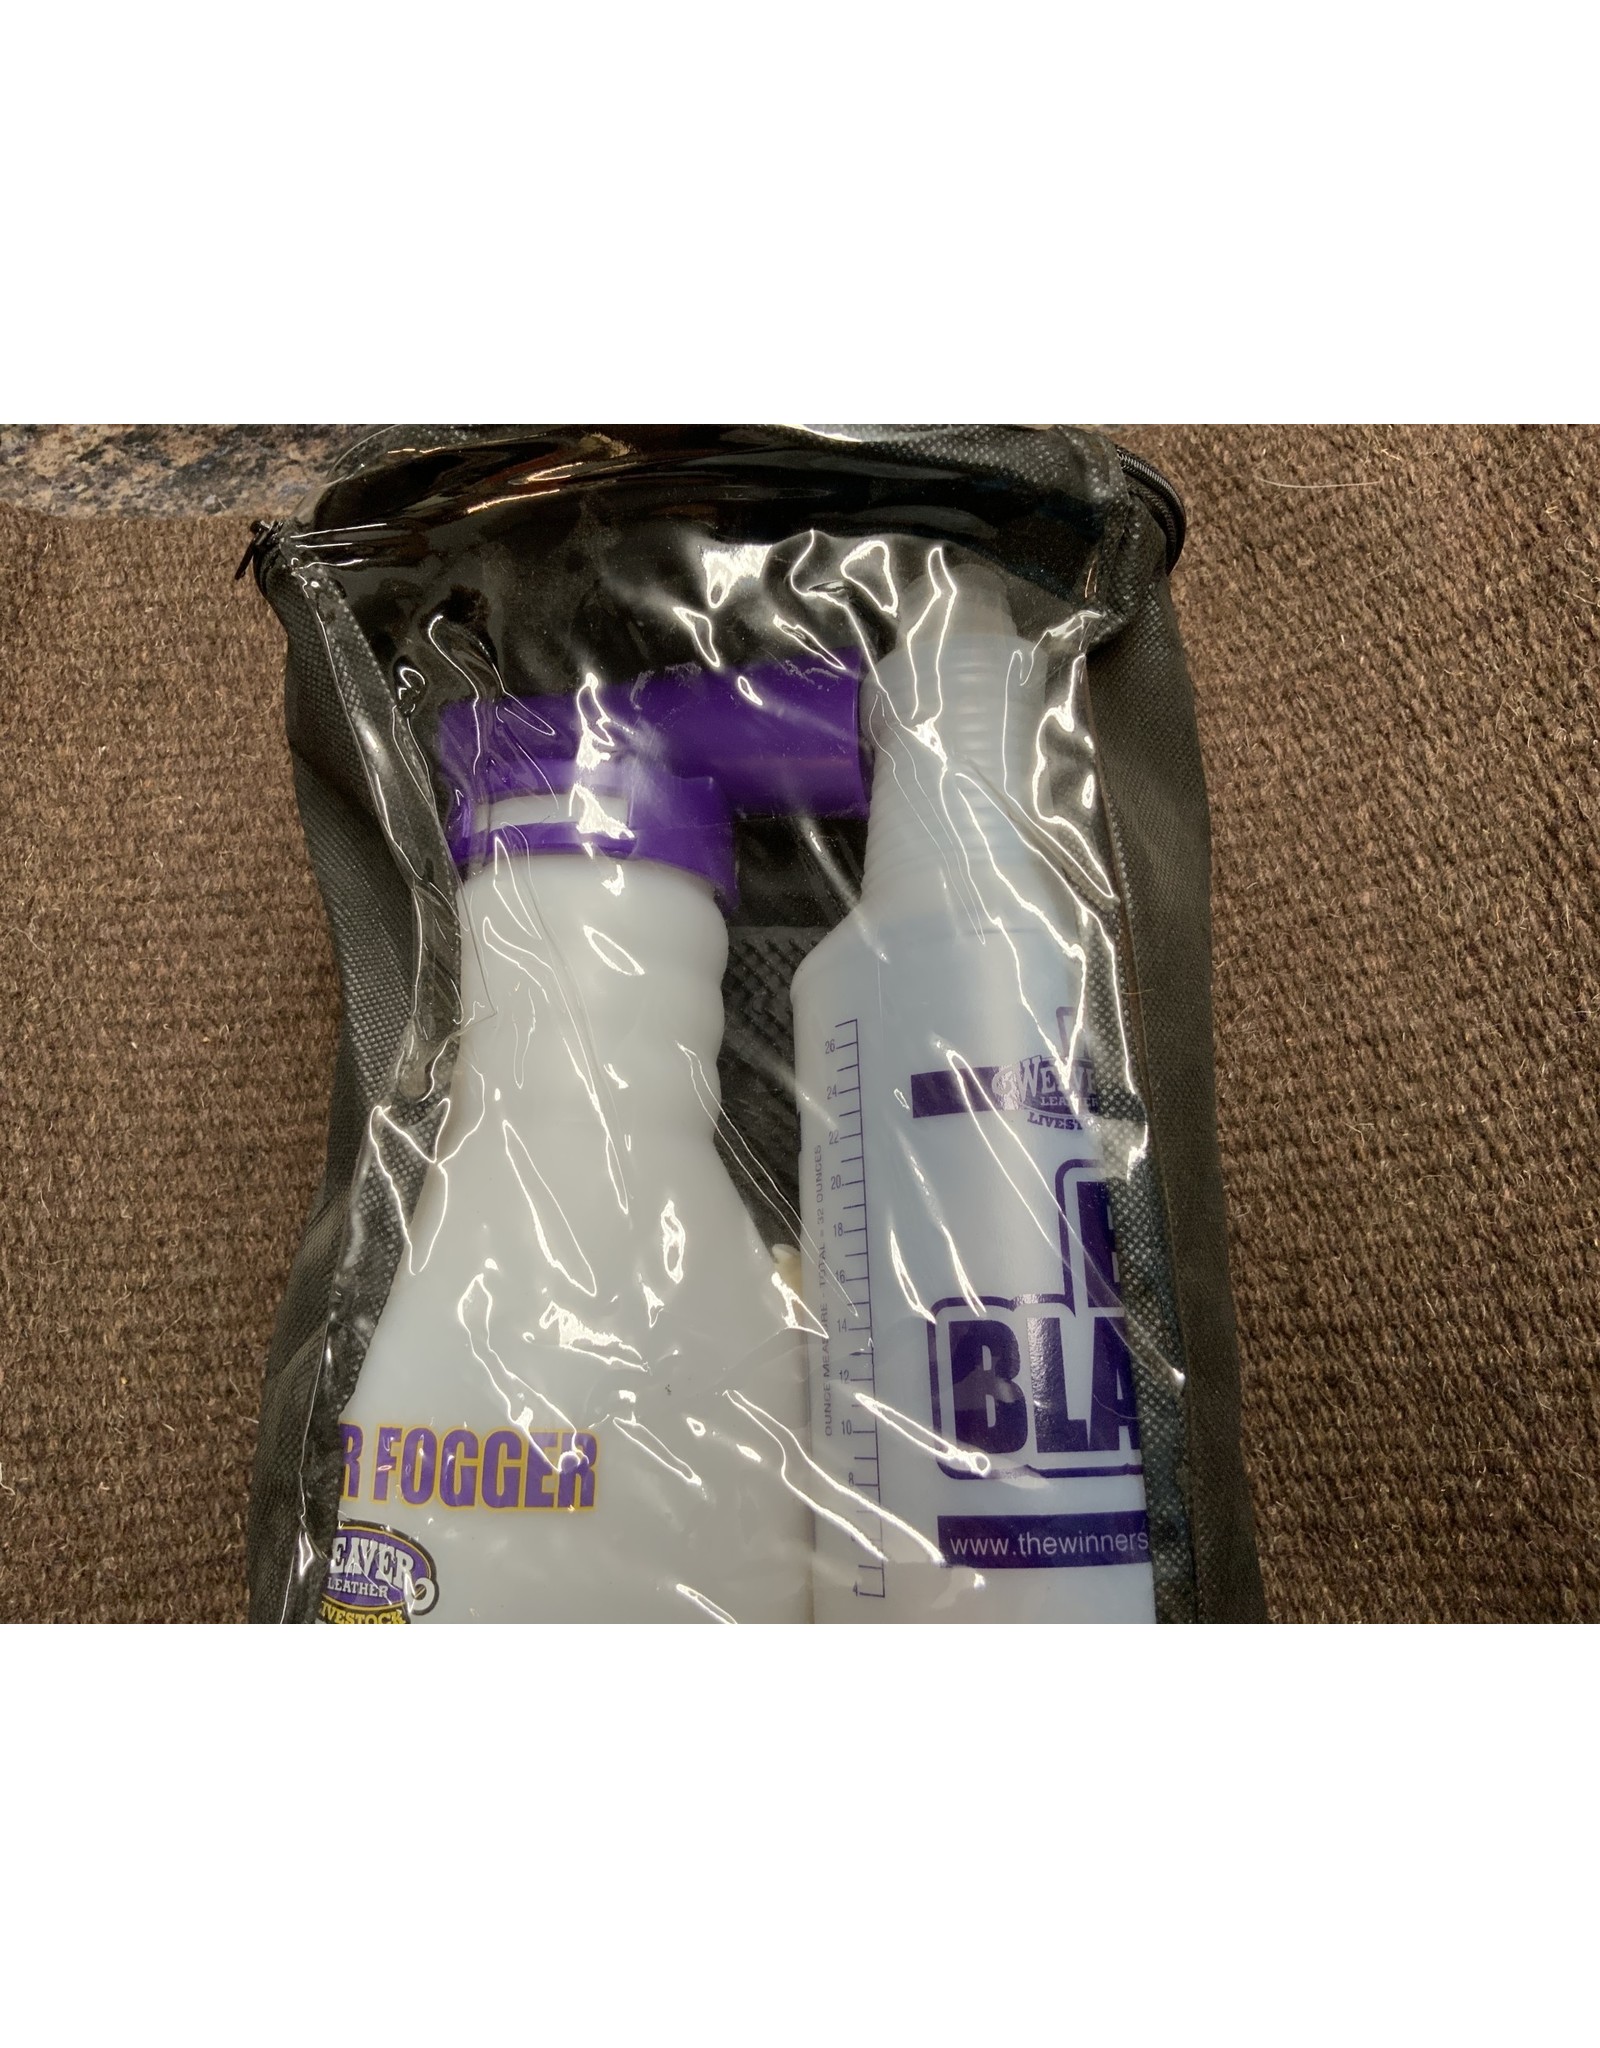 Weaver 4H Kit - Fogger, Spray Bottle, Plastic Gloves - 69-2902 - REDUCED!